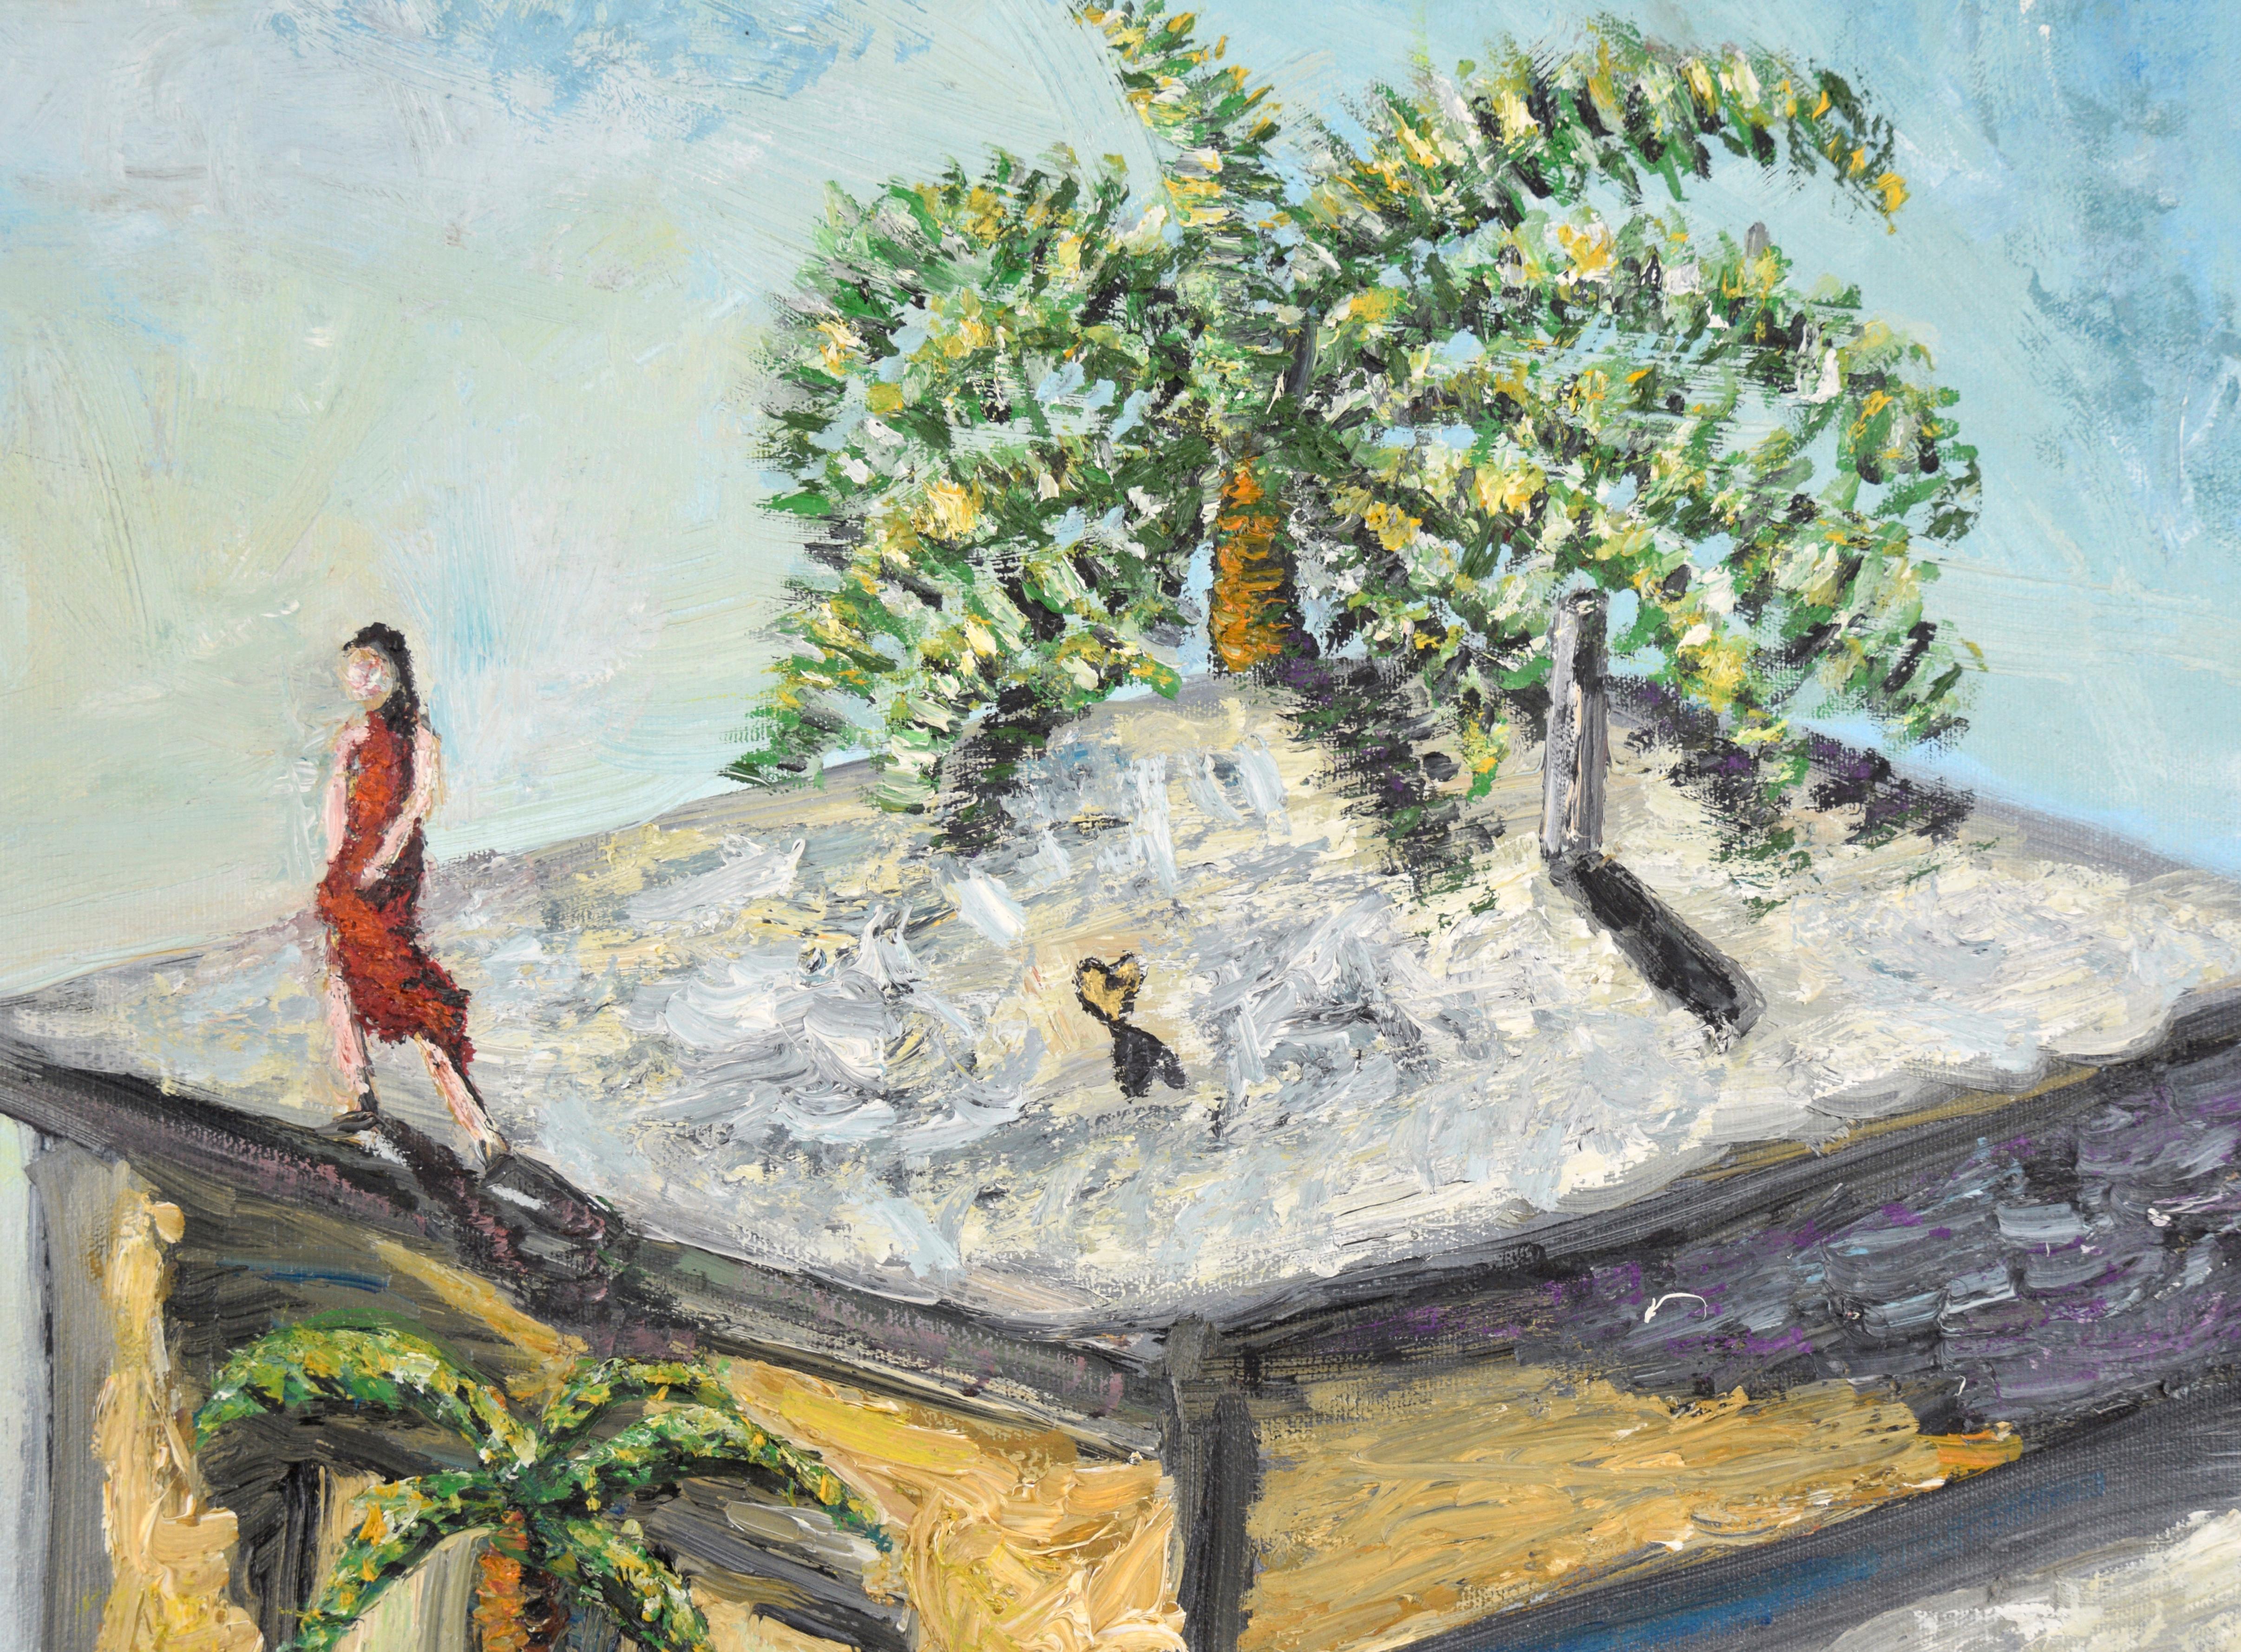 Across the Divide - Composition figurative symbolique de la baie de SF à l'huile sur toile

Composition fortement texturée avec des thèmes romantiques par un artiste abstrait inconnu de San Francisco. Deux personnes se tiennent sur les toits